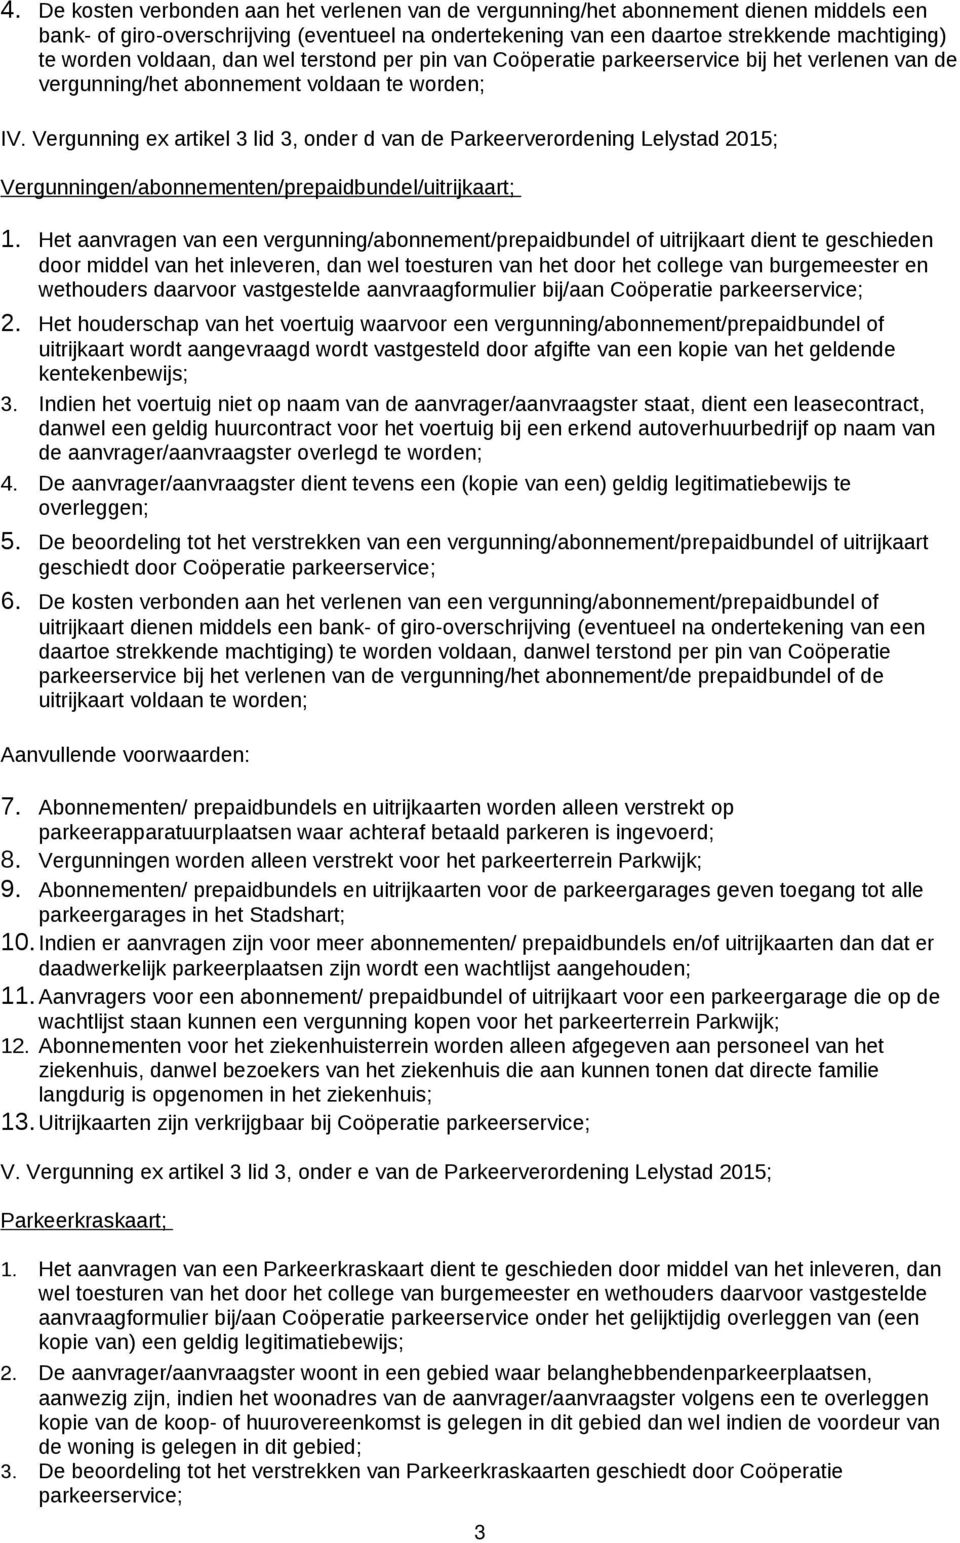 Vergunning ex artikel 3 lid 3, onder d van de Parkeerverordening Lelystad 2015; Vergunningen/abonnementen/prepaidbundel/uitrijkaart; 1.